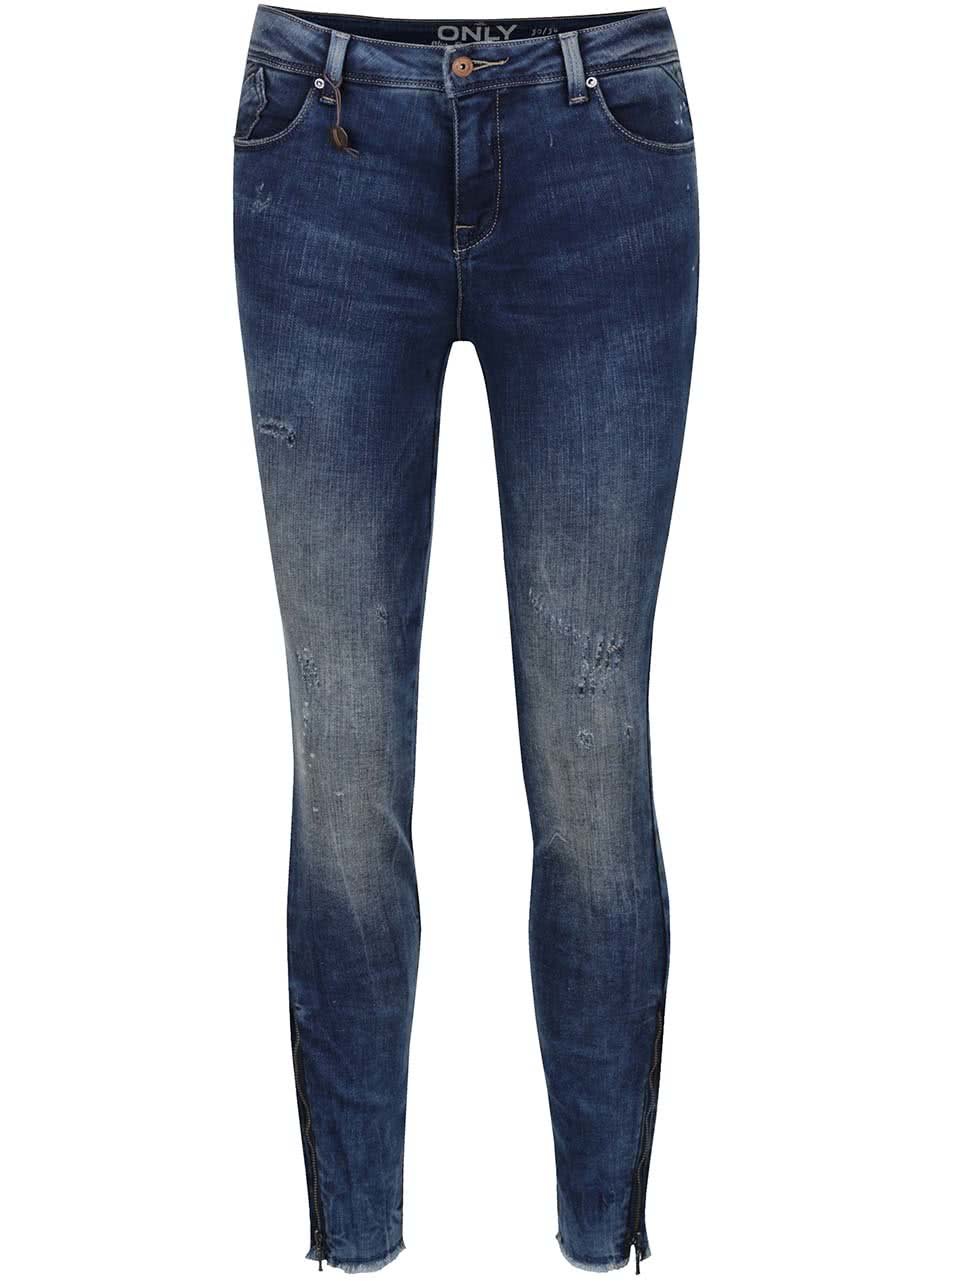 Tmavě modré skinny džíny s potrhaným efektem ONLY Carmen